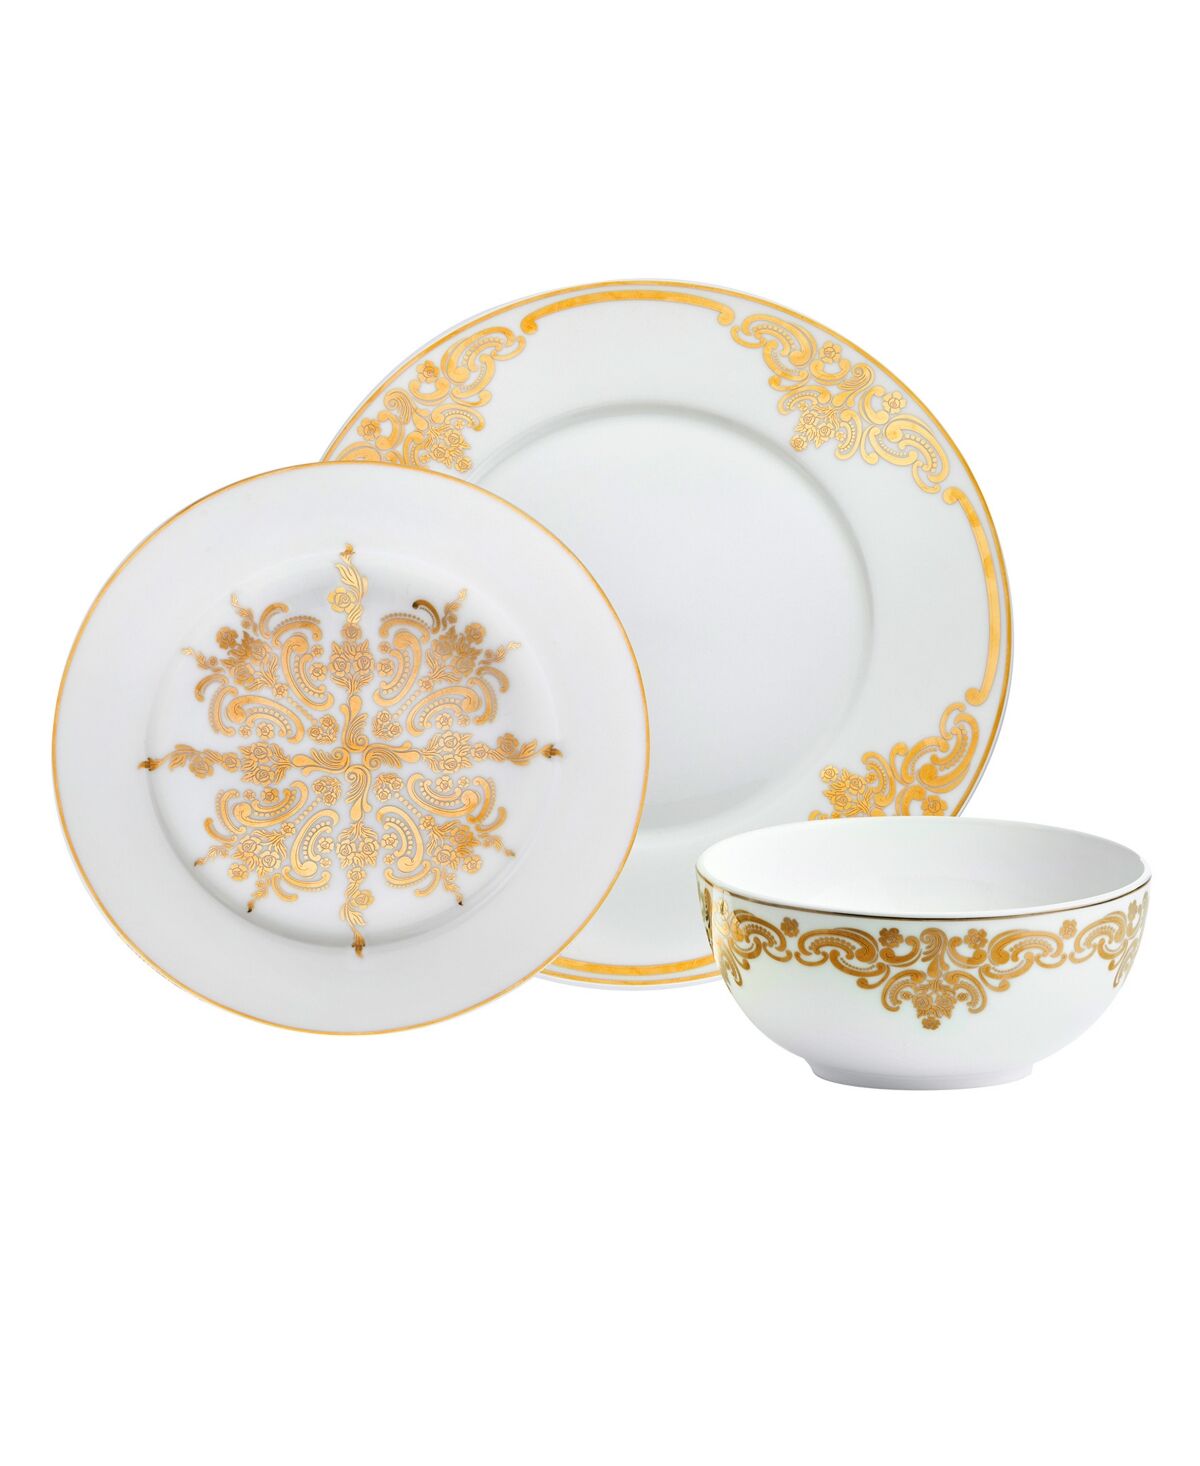 Godinger Baroque 12-pc Dinnerware Set, Service for 4 - Gold